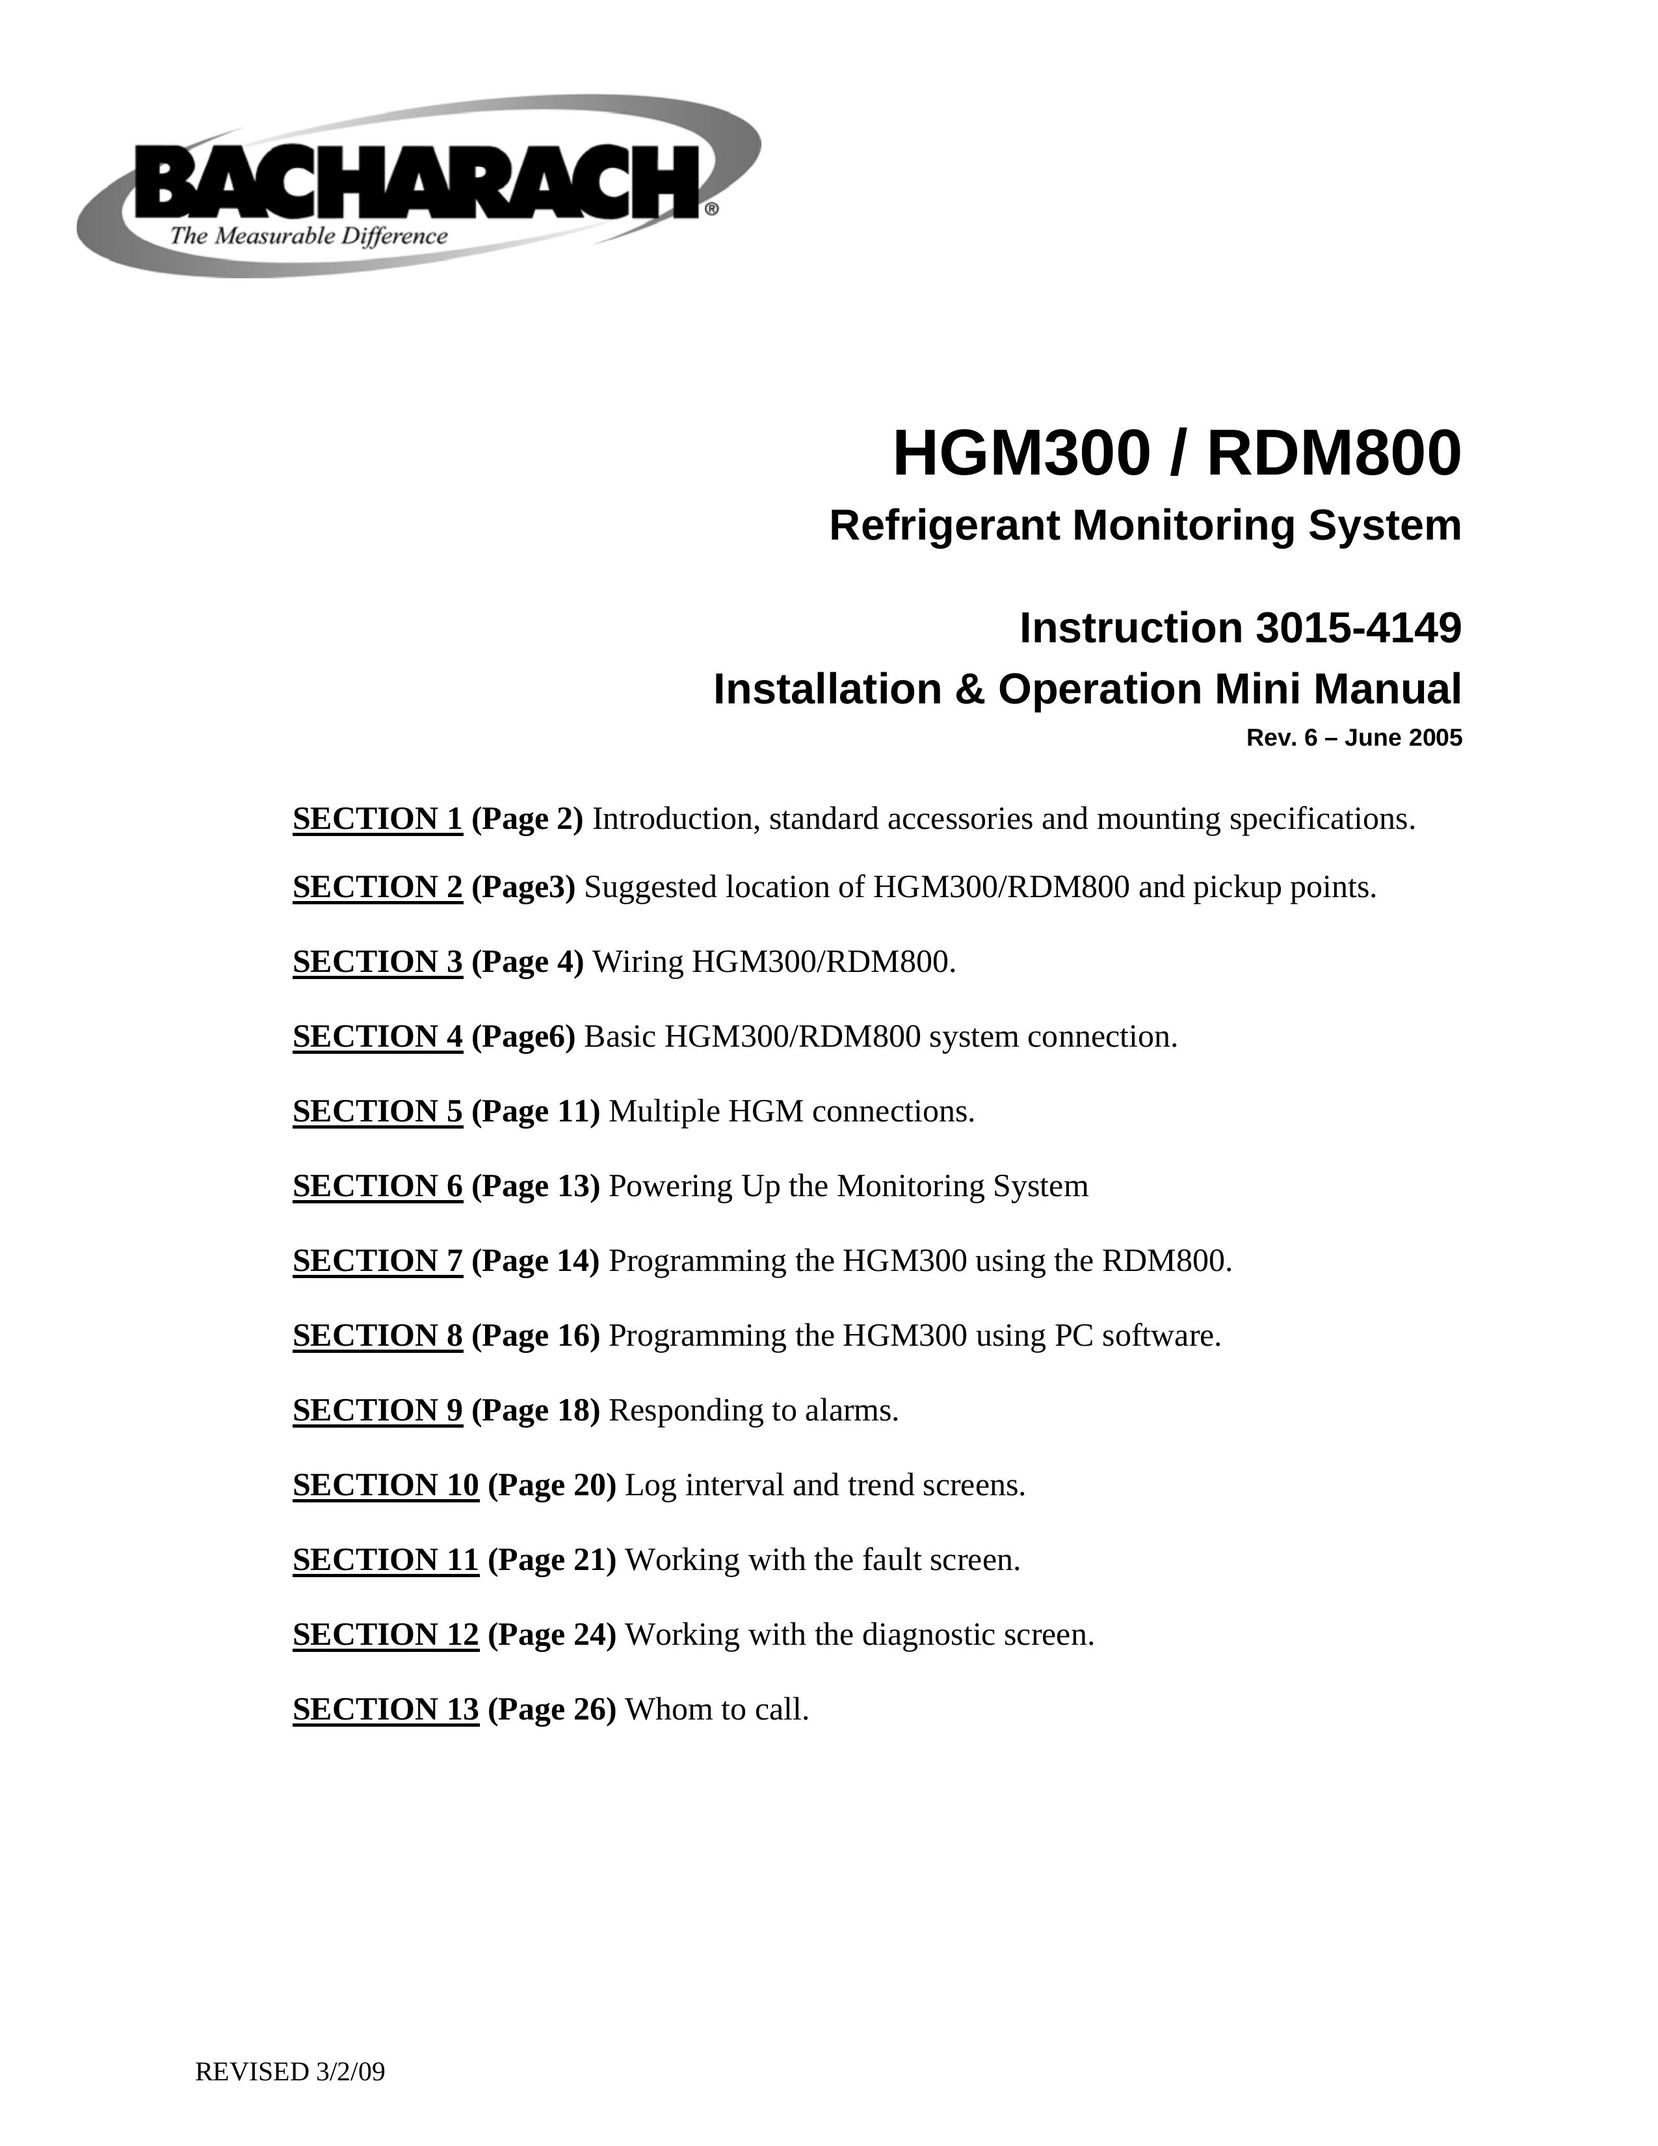 Bacharach HGM300 Carbon Monoxide Alarm User Manual